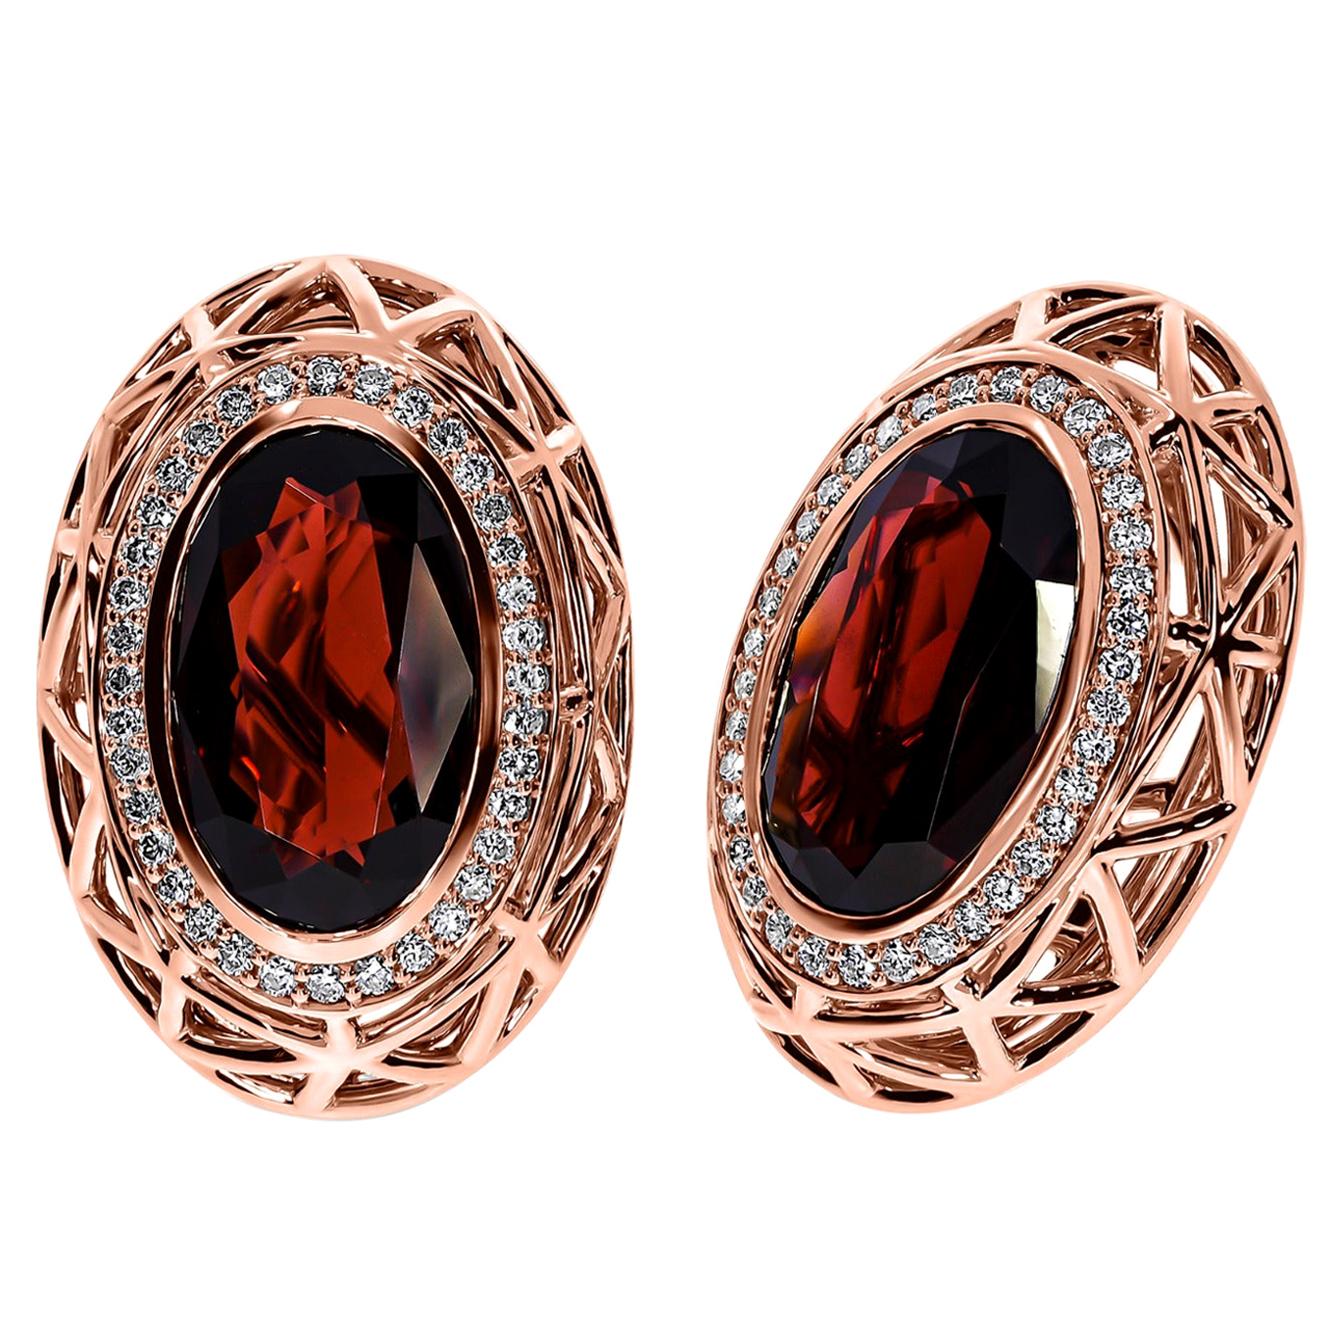 18K Rose Gold Rhodolite Garnet Nest Pendant and Earrings For Sale